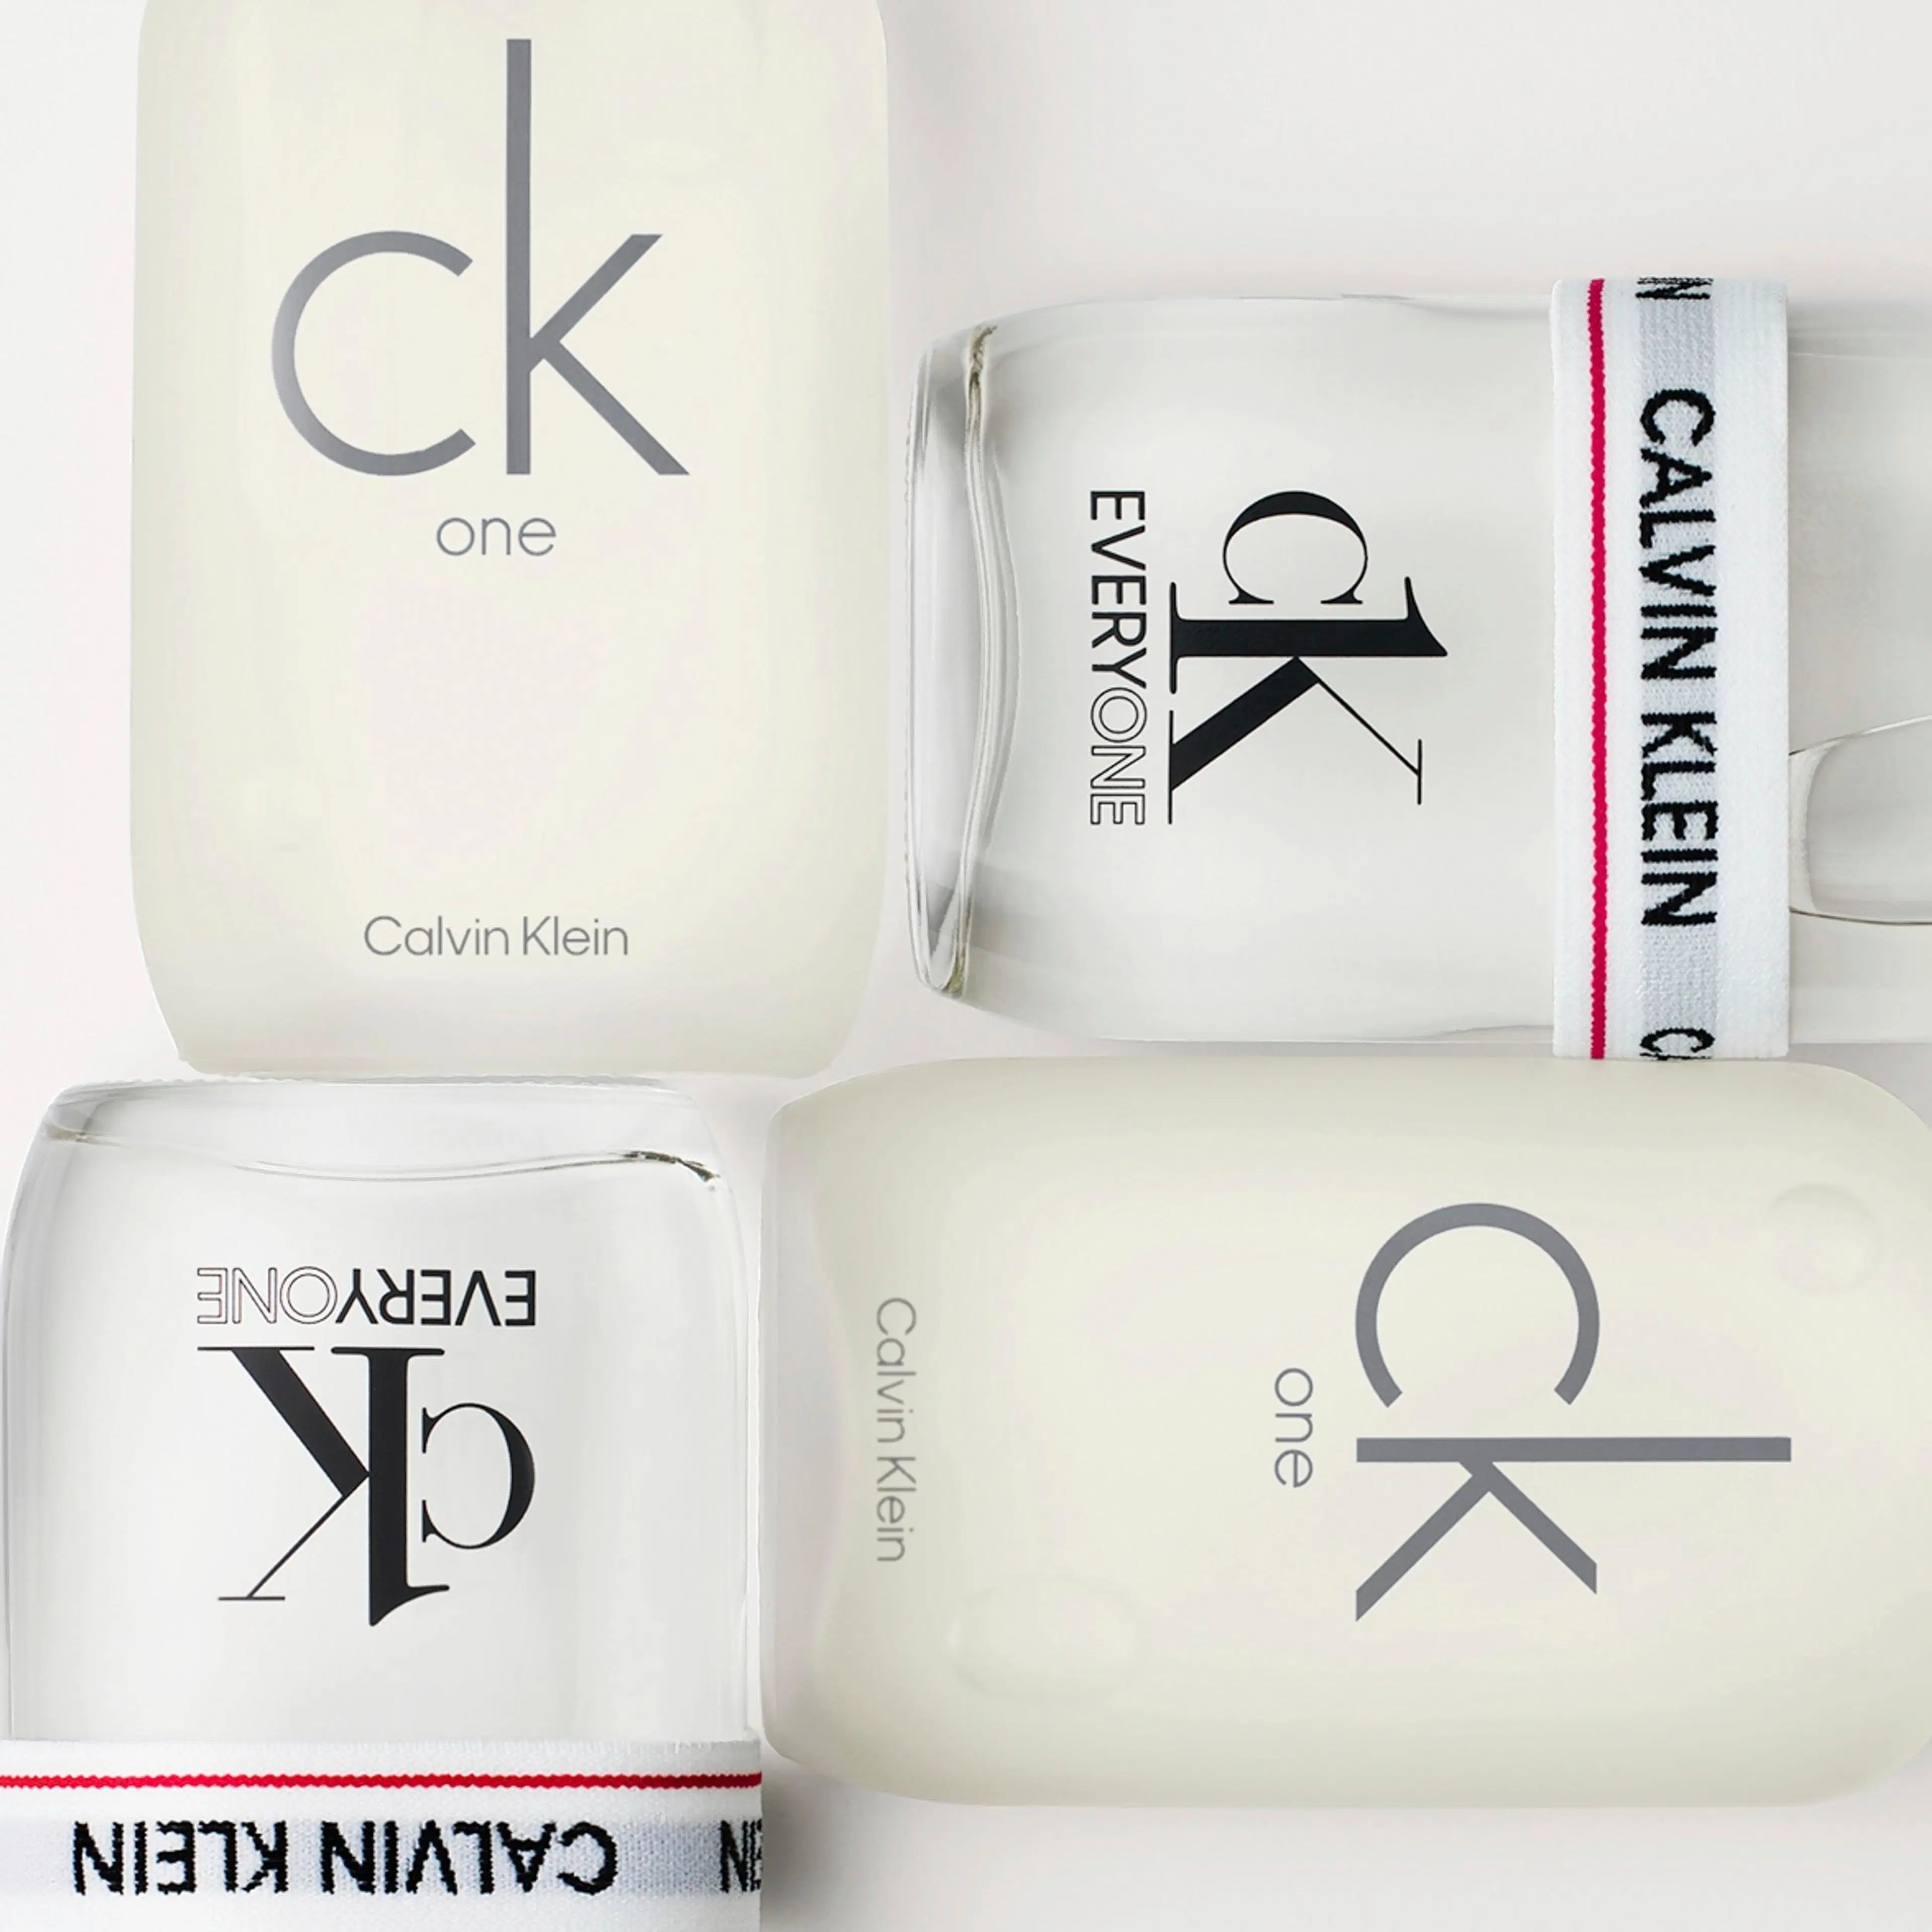 Calvin Klein CK Everyone EdT tuoksu 50 ml